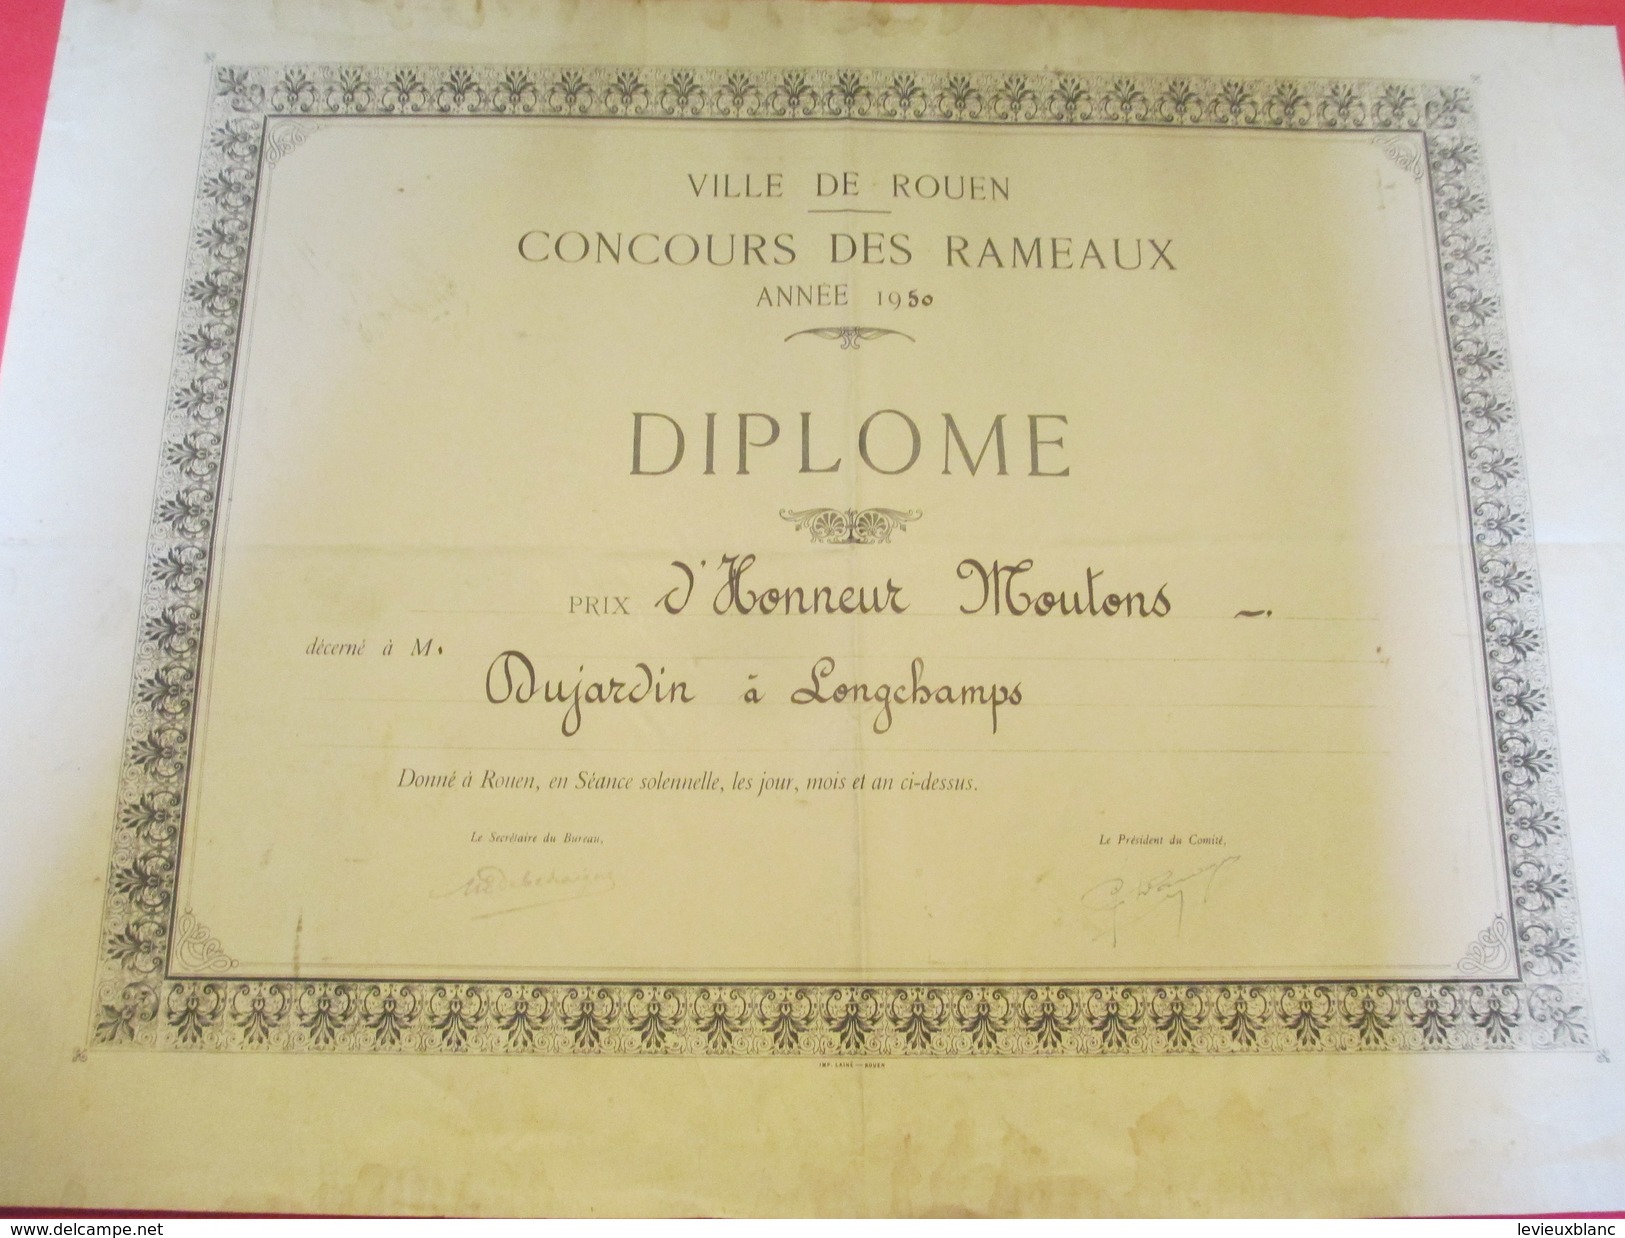 Diplôme / Agriculture/ROUEN/Concours Des Rameaux/Prix D'Honneur Moutons/DUJARDIN/Longchamps/1950   DIP172 - Diploma & School Reports